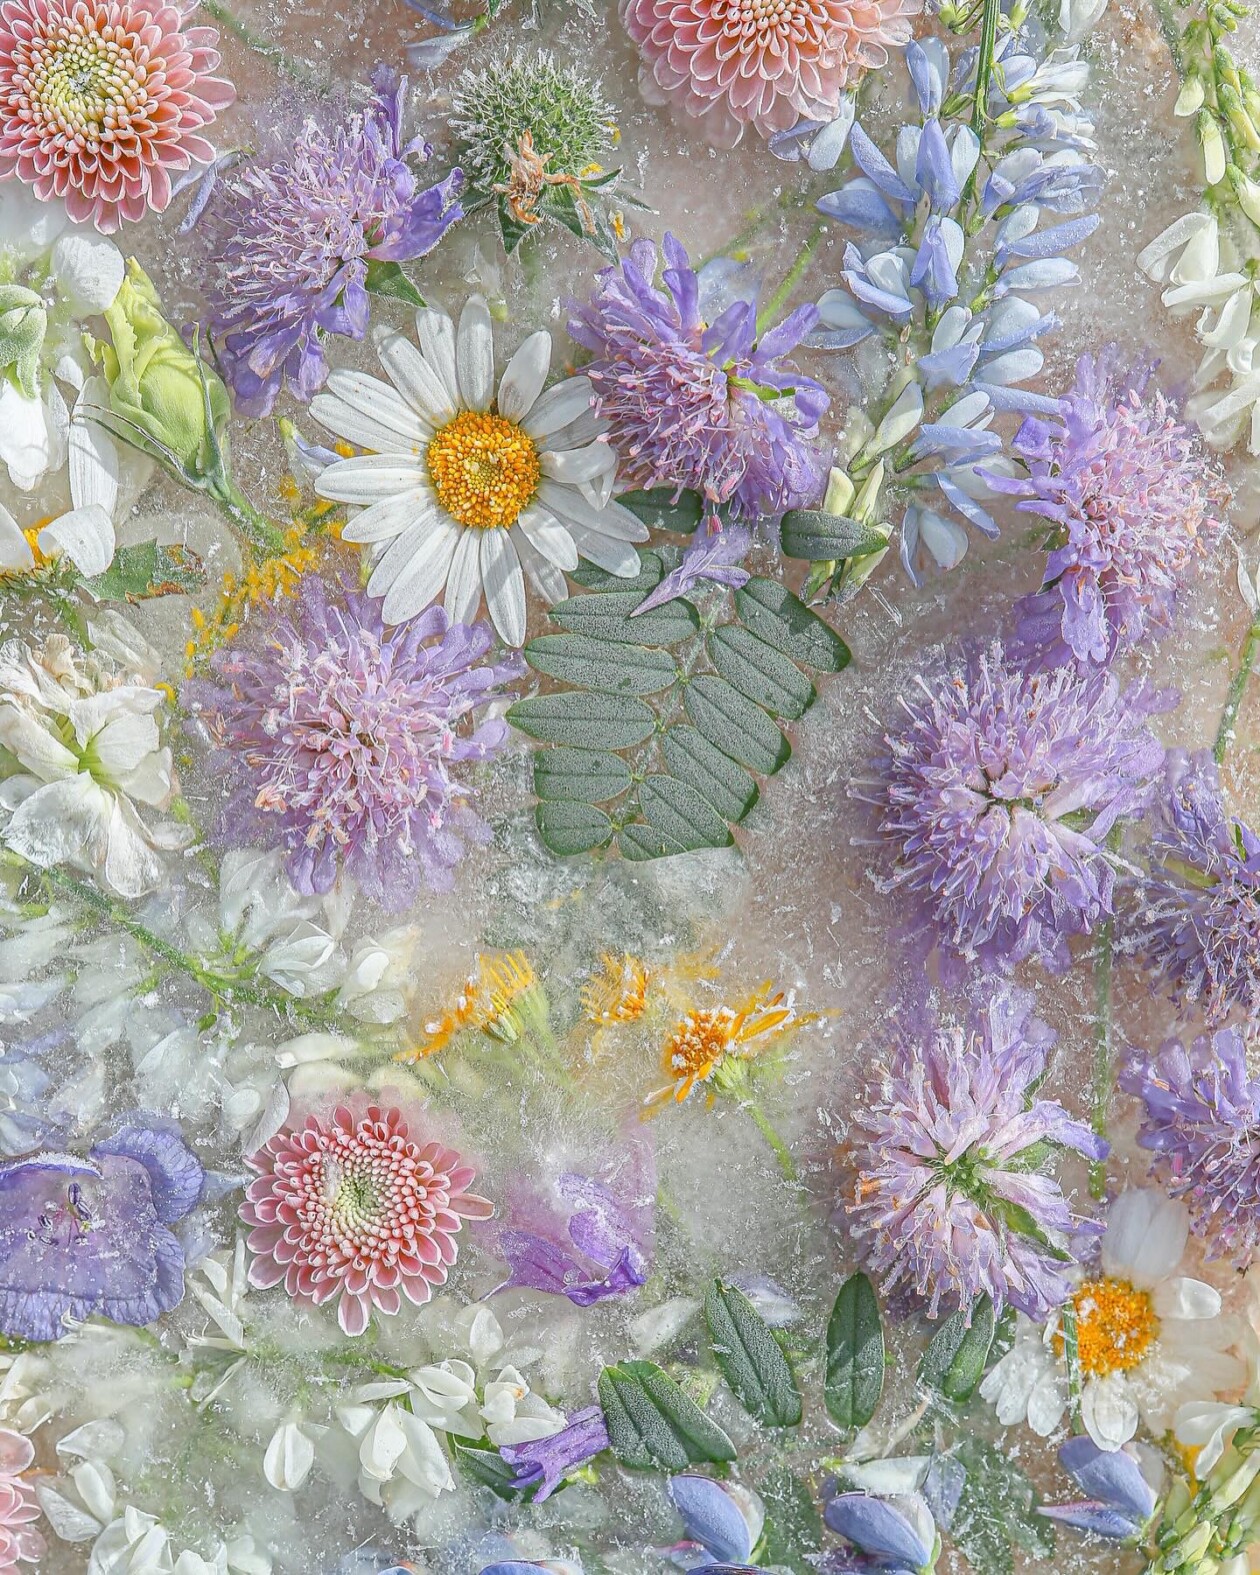 The Captivating Floral Artistry Of Joe Horner (12)